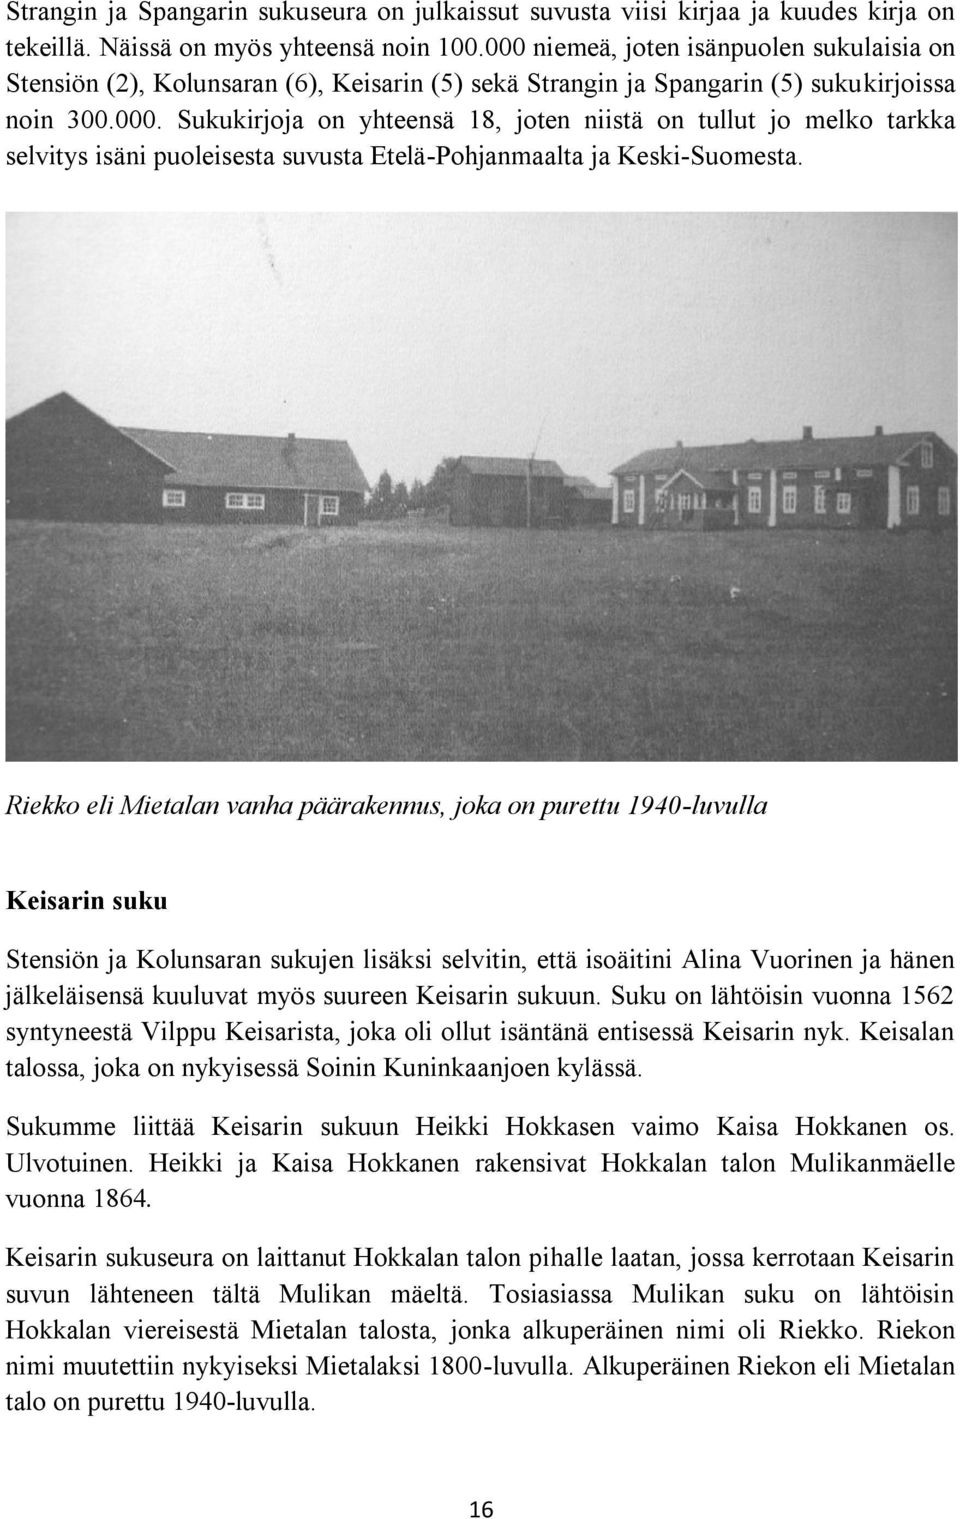 Riekko eli Mietalan vanha päärakennus, joka on purettu 1940-luvulla Keisarin suku Stensiön ja Kolunsaran sukujen lisäksi selvitin, että isoäitini Alina Vuorinen ja hänen jälkeläisensä kuuluvat myös